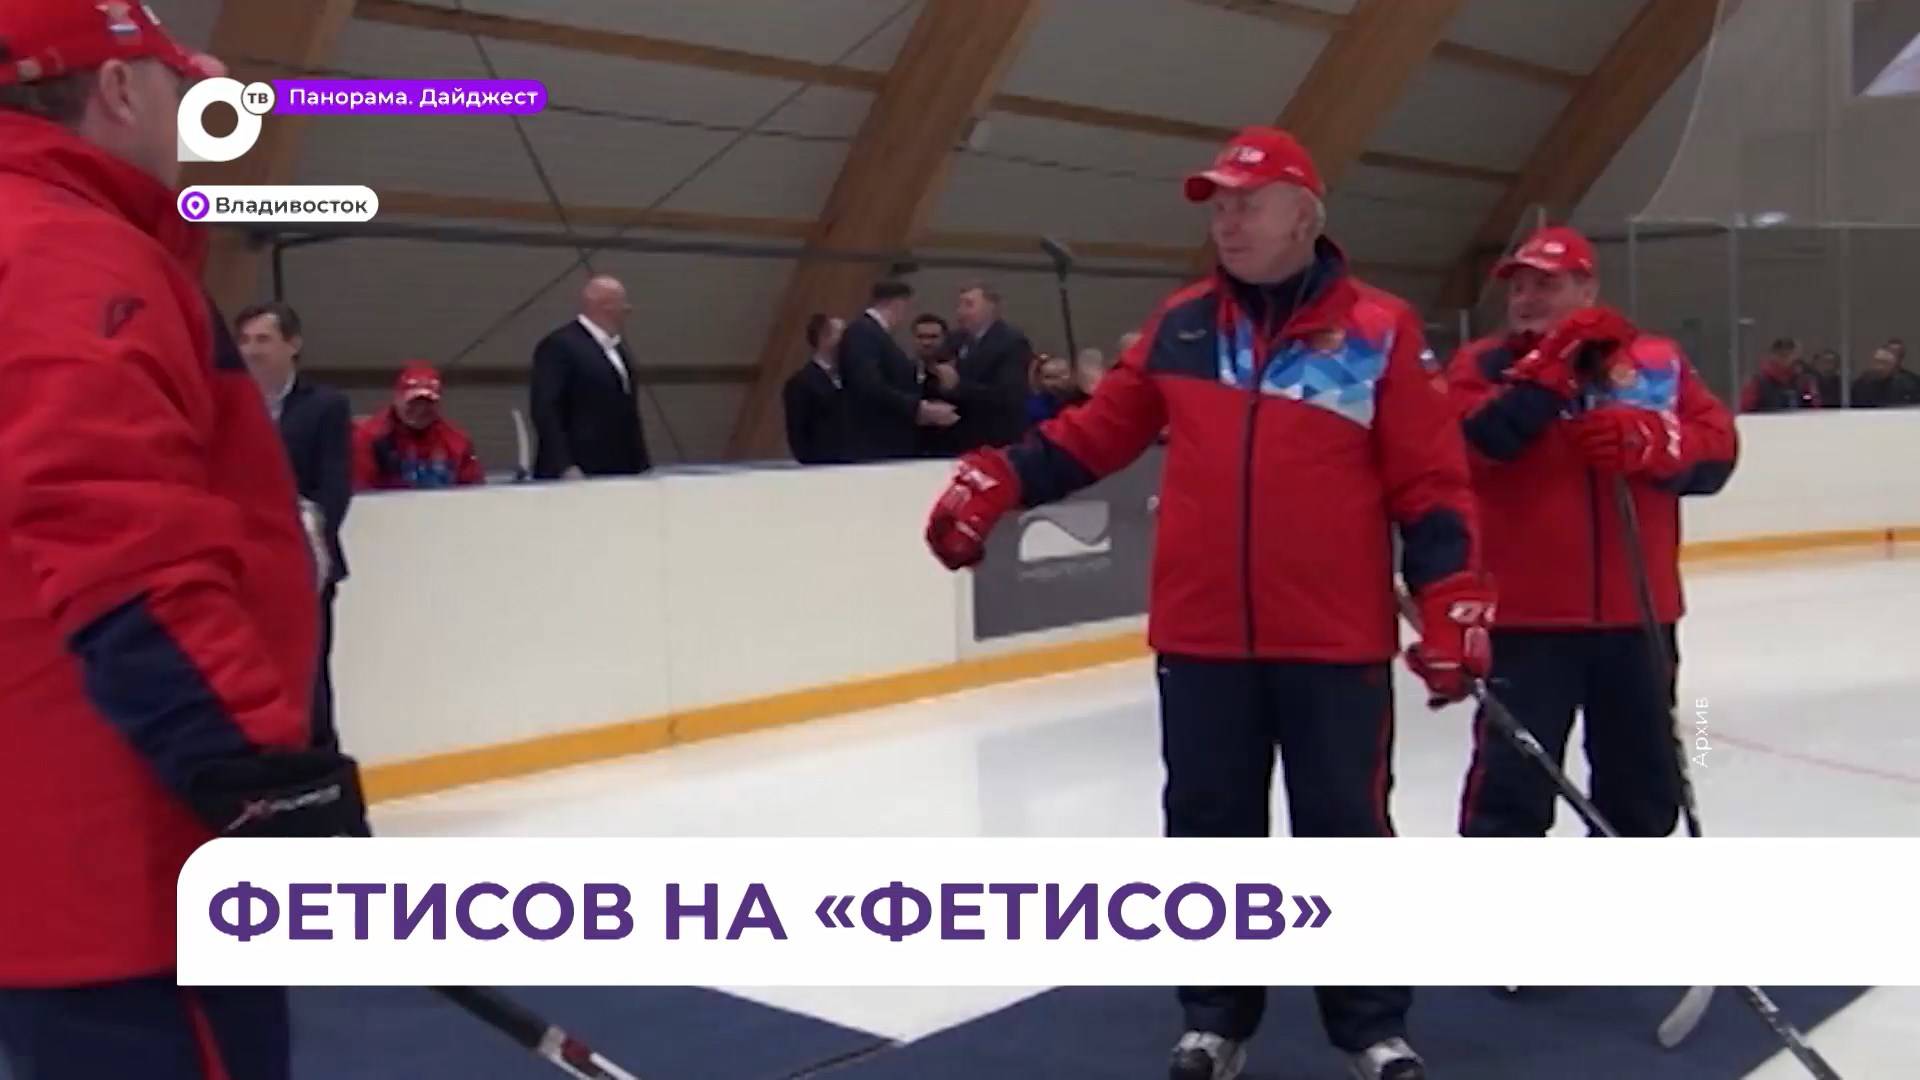 Двукратный олимпийский чемпион Вячеслав Фетисов приедет во Владивосток